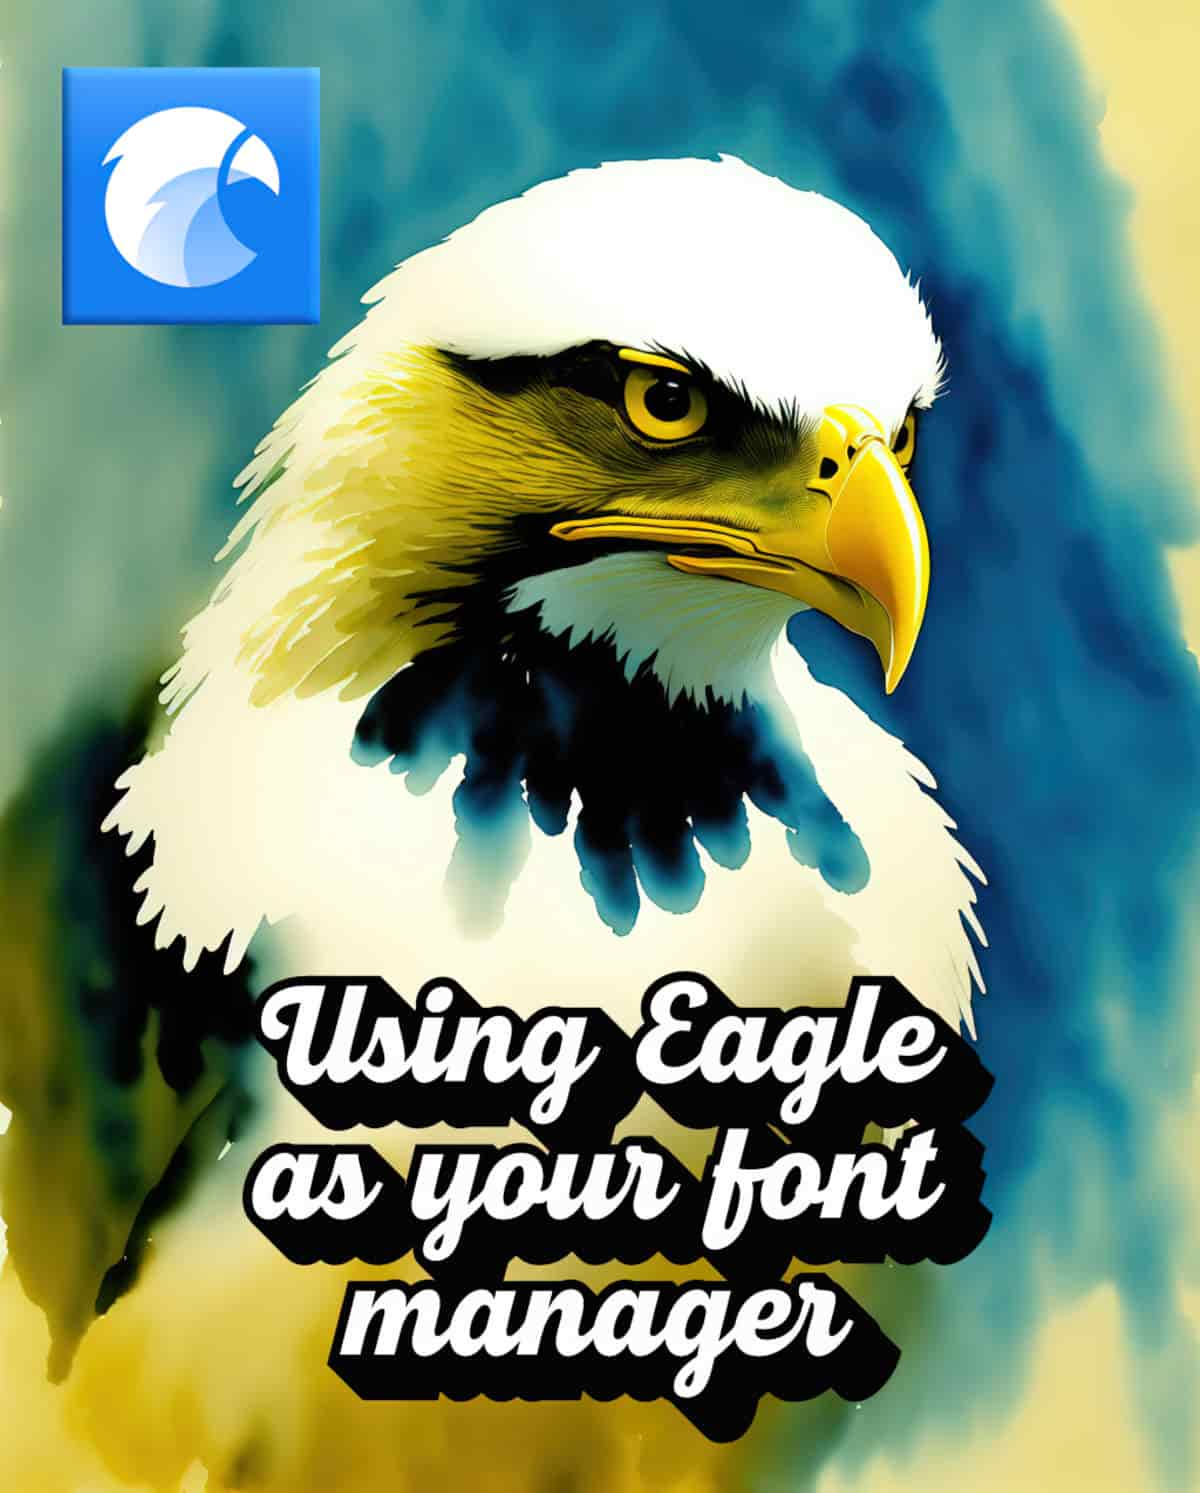 Eagle Font Manager